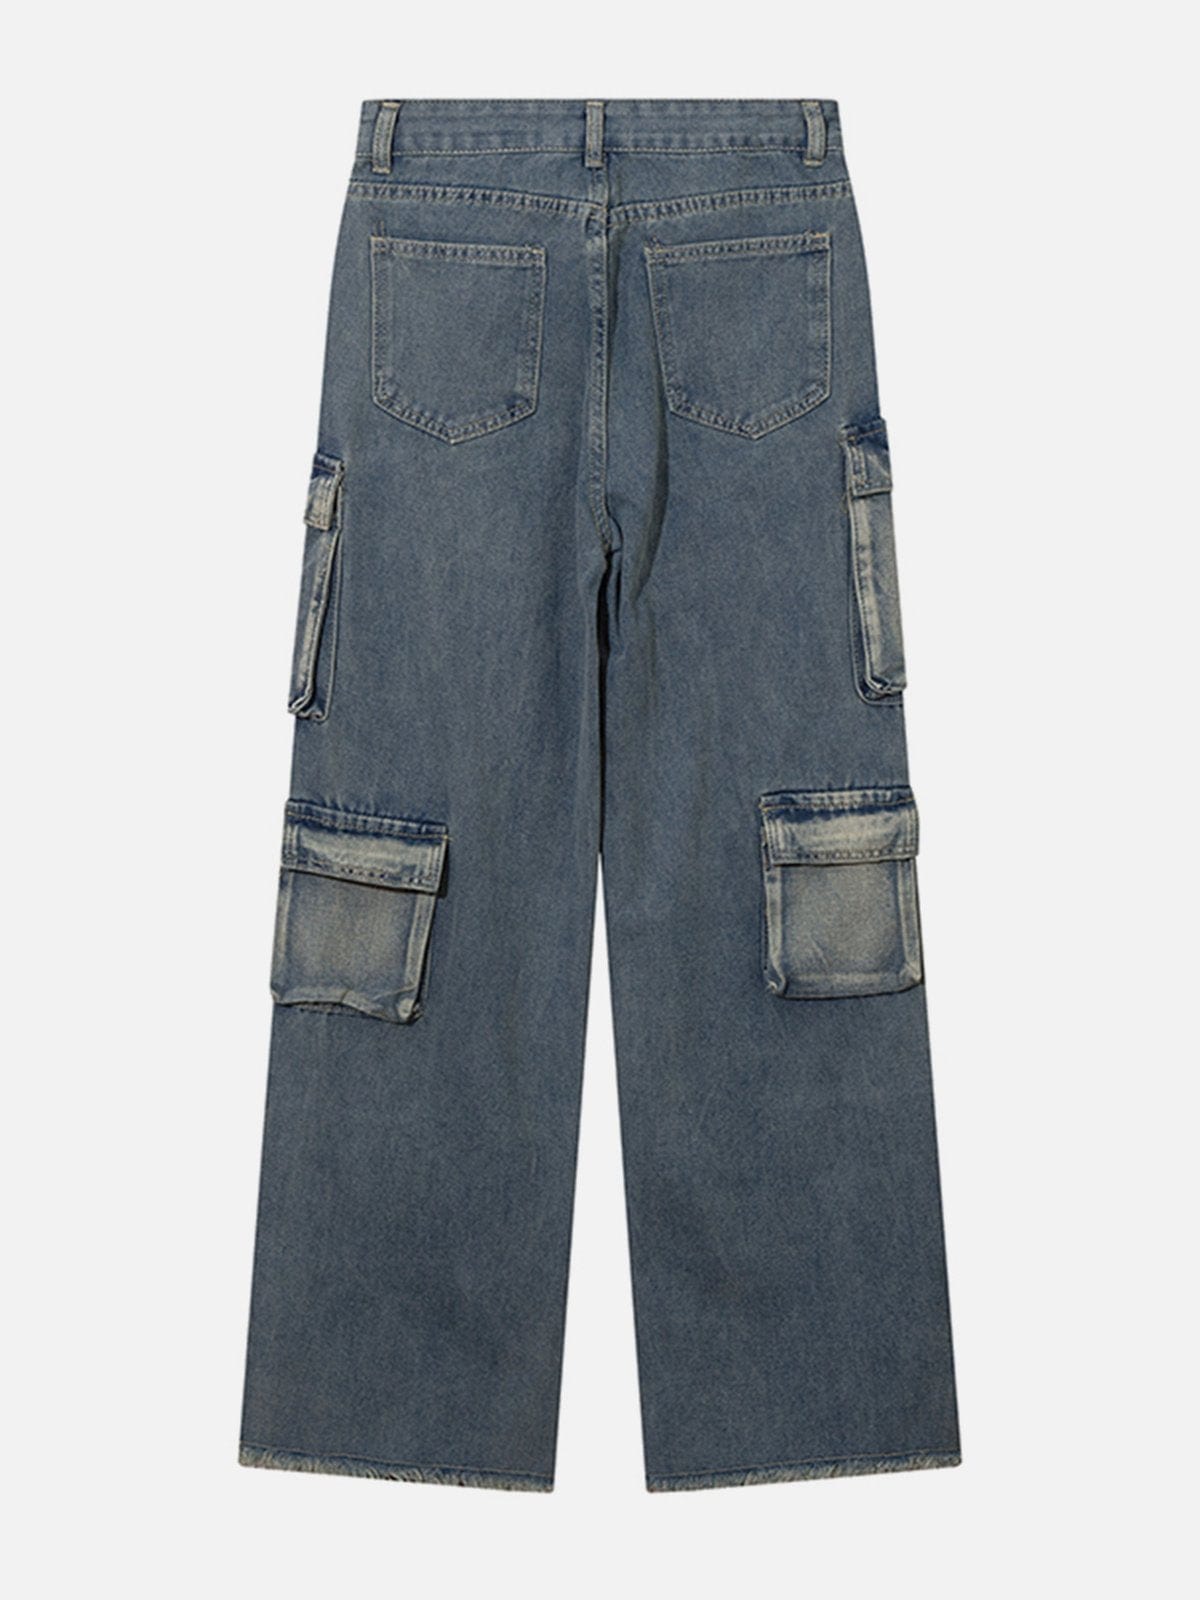 NEV Patchwork Multi-Pocket Jeans